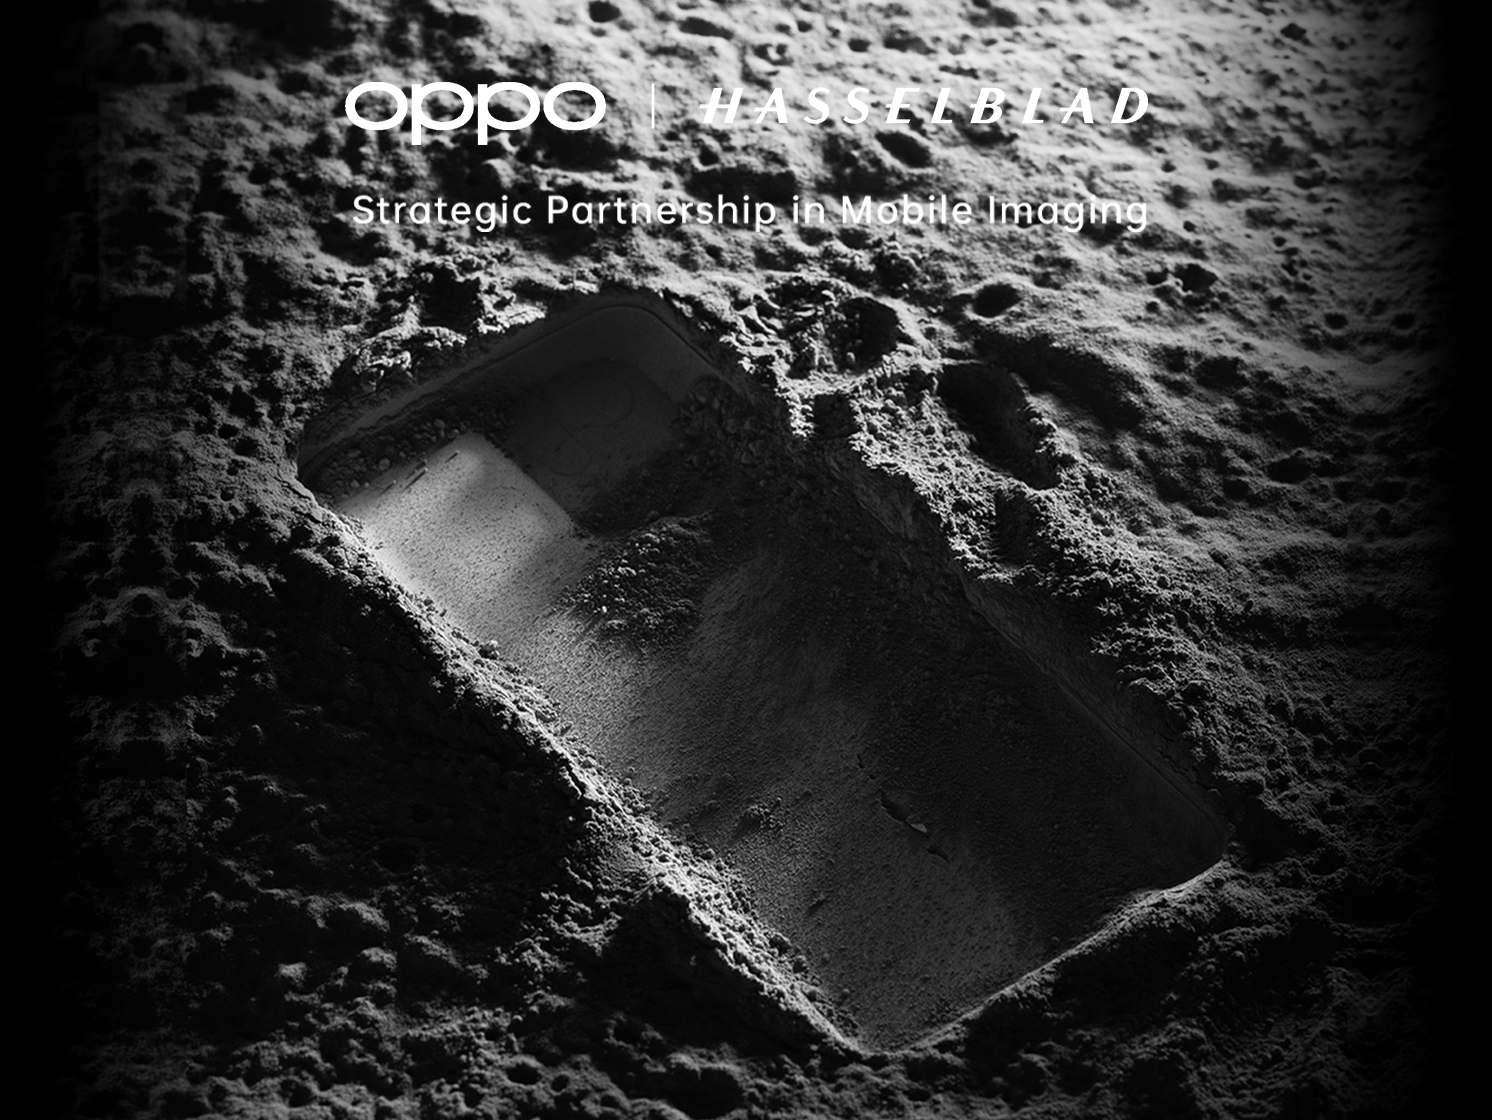 Po OnePlus: OPPO ogłosiło współpracę z Hasselblad